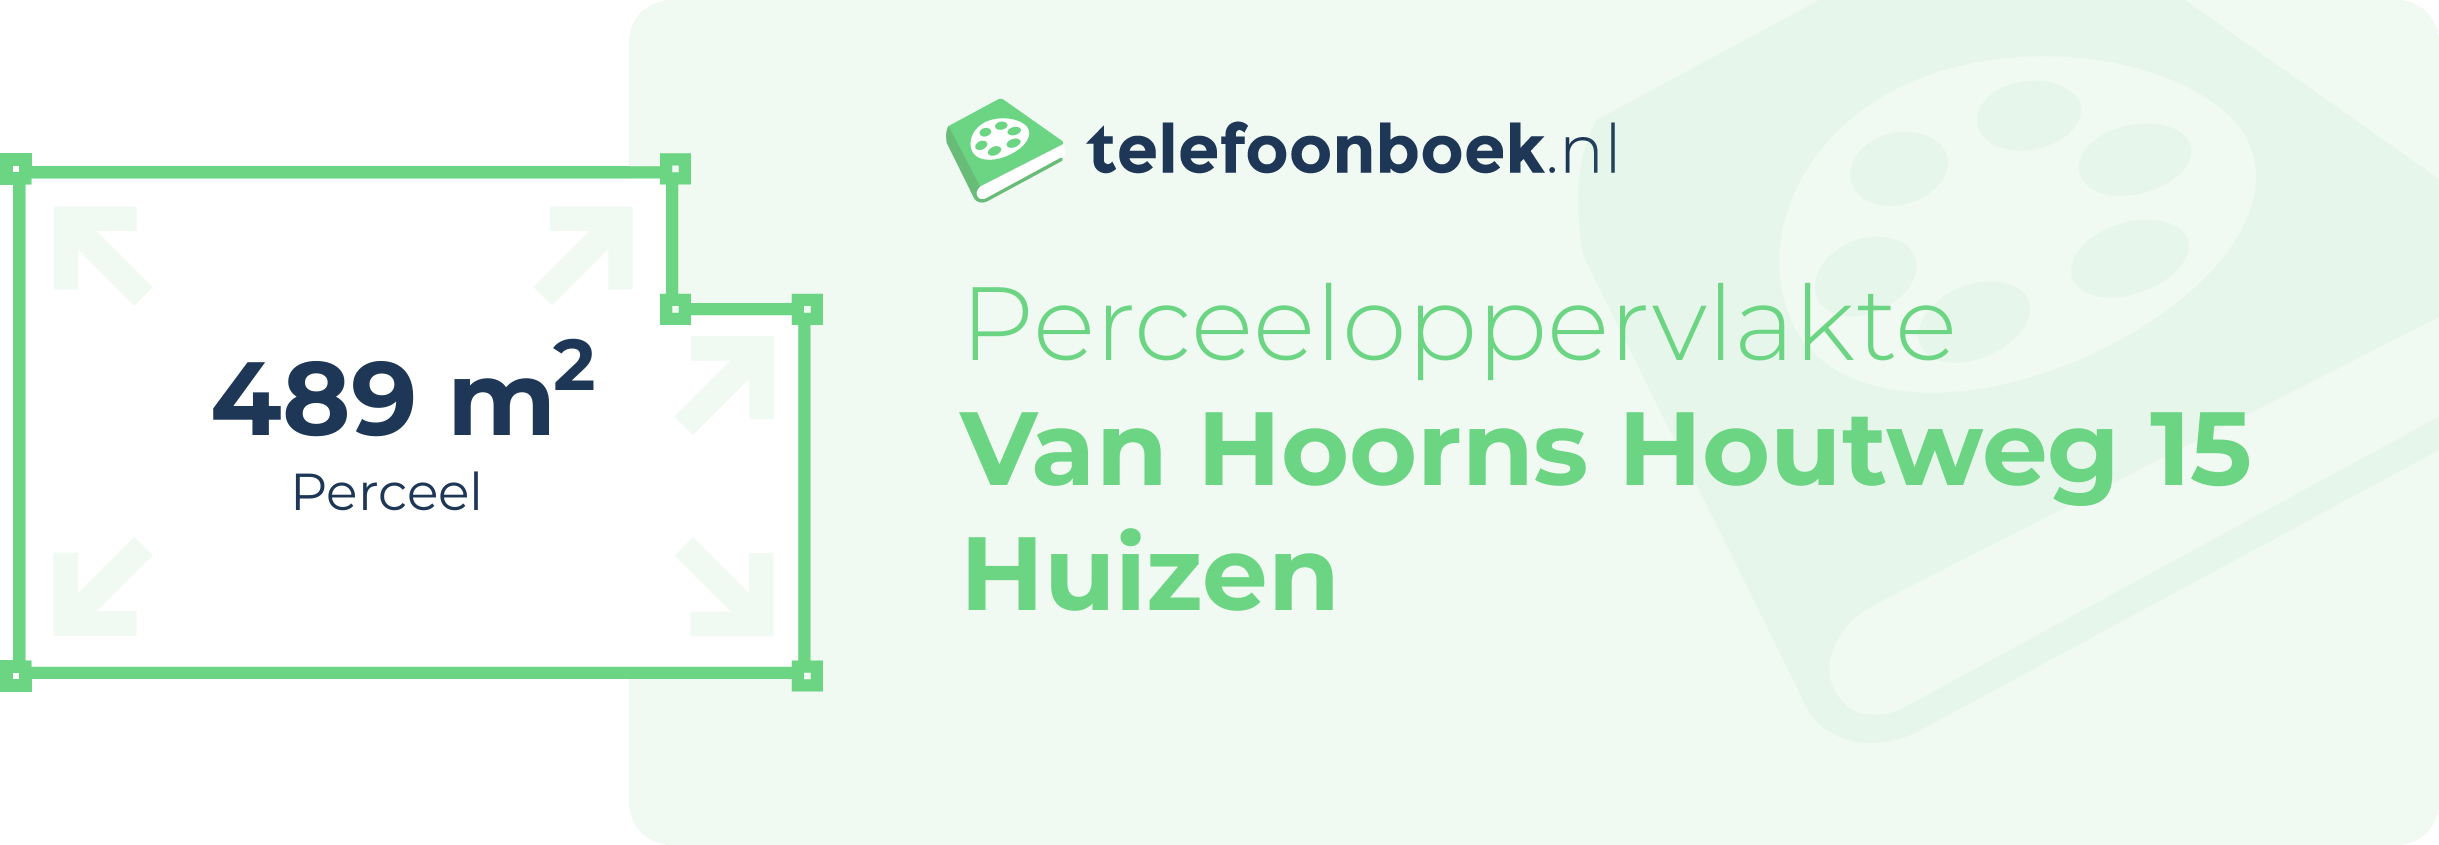 Perceeloppervlakte Van Hoorns Houtweg 15 Huizen